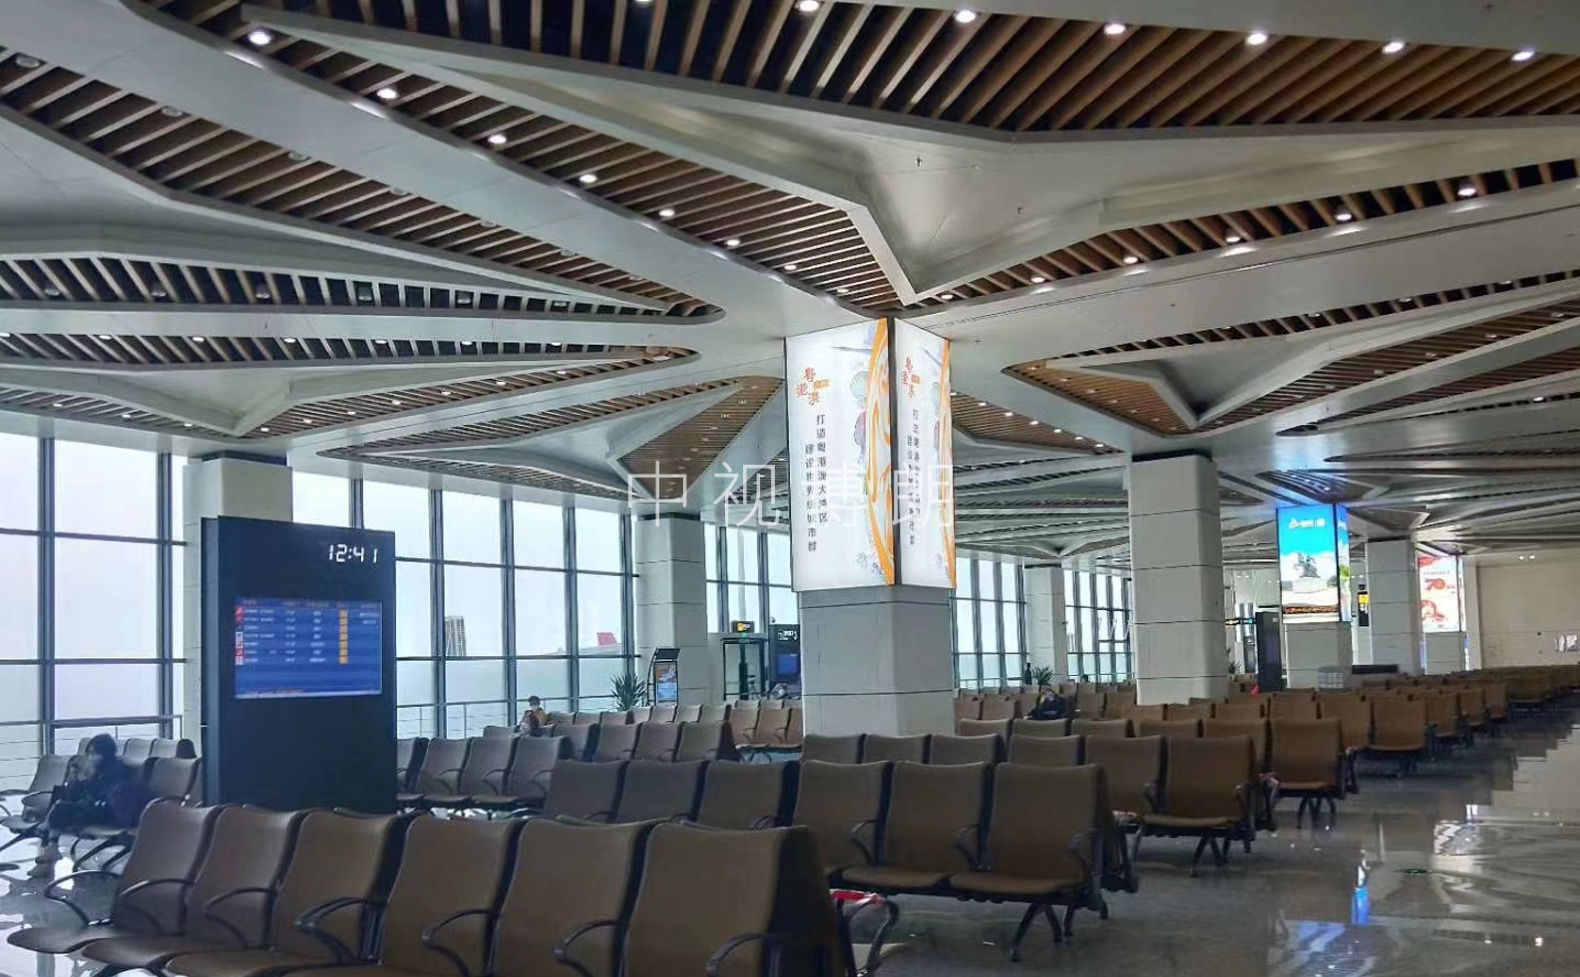 惠州机场候机厅包柱灯箱套装广告,候机厅包柱灯箱套装广告,包柱灯箱套装广告